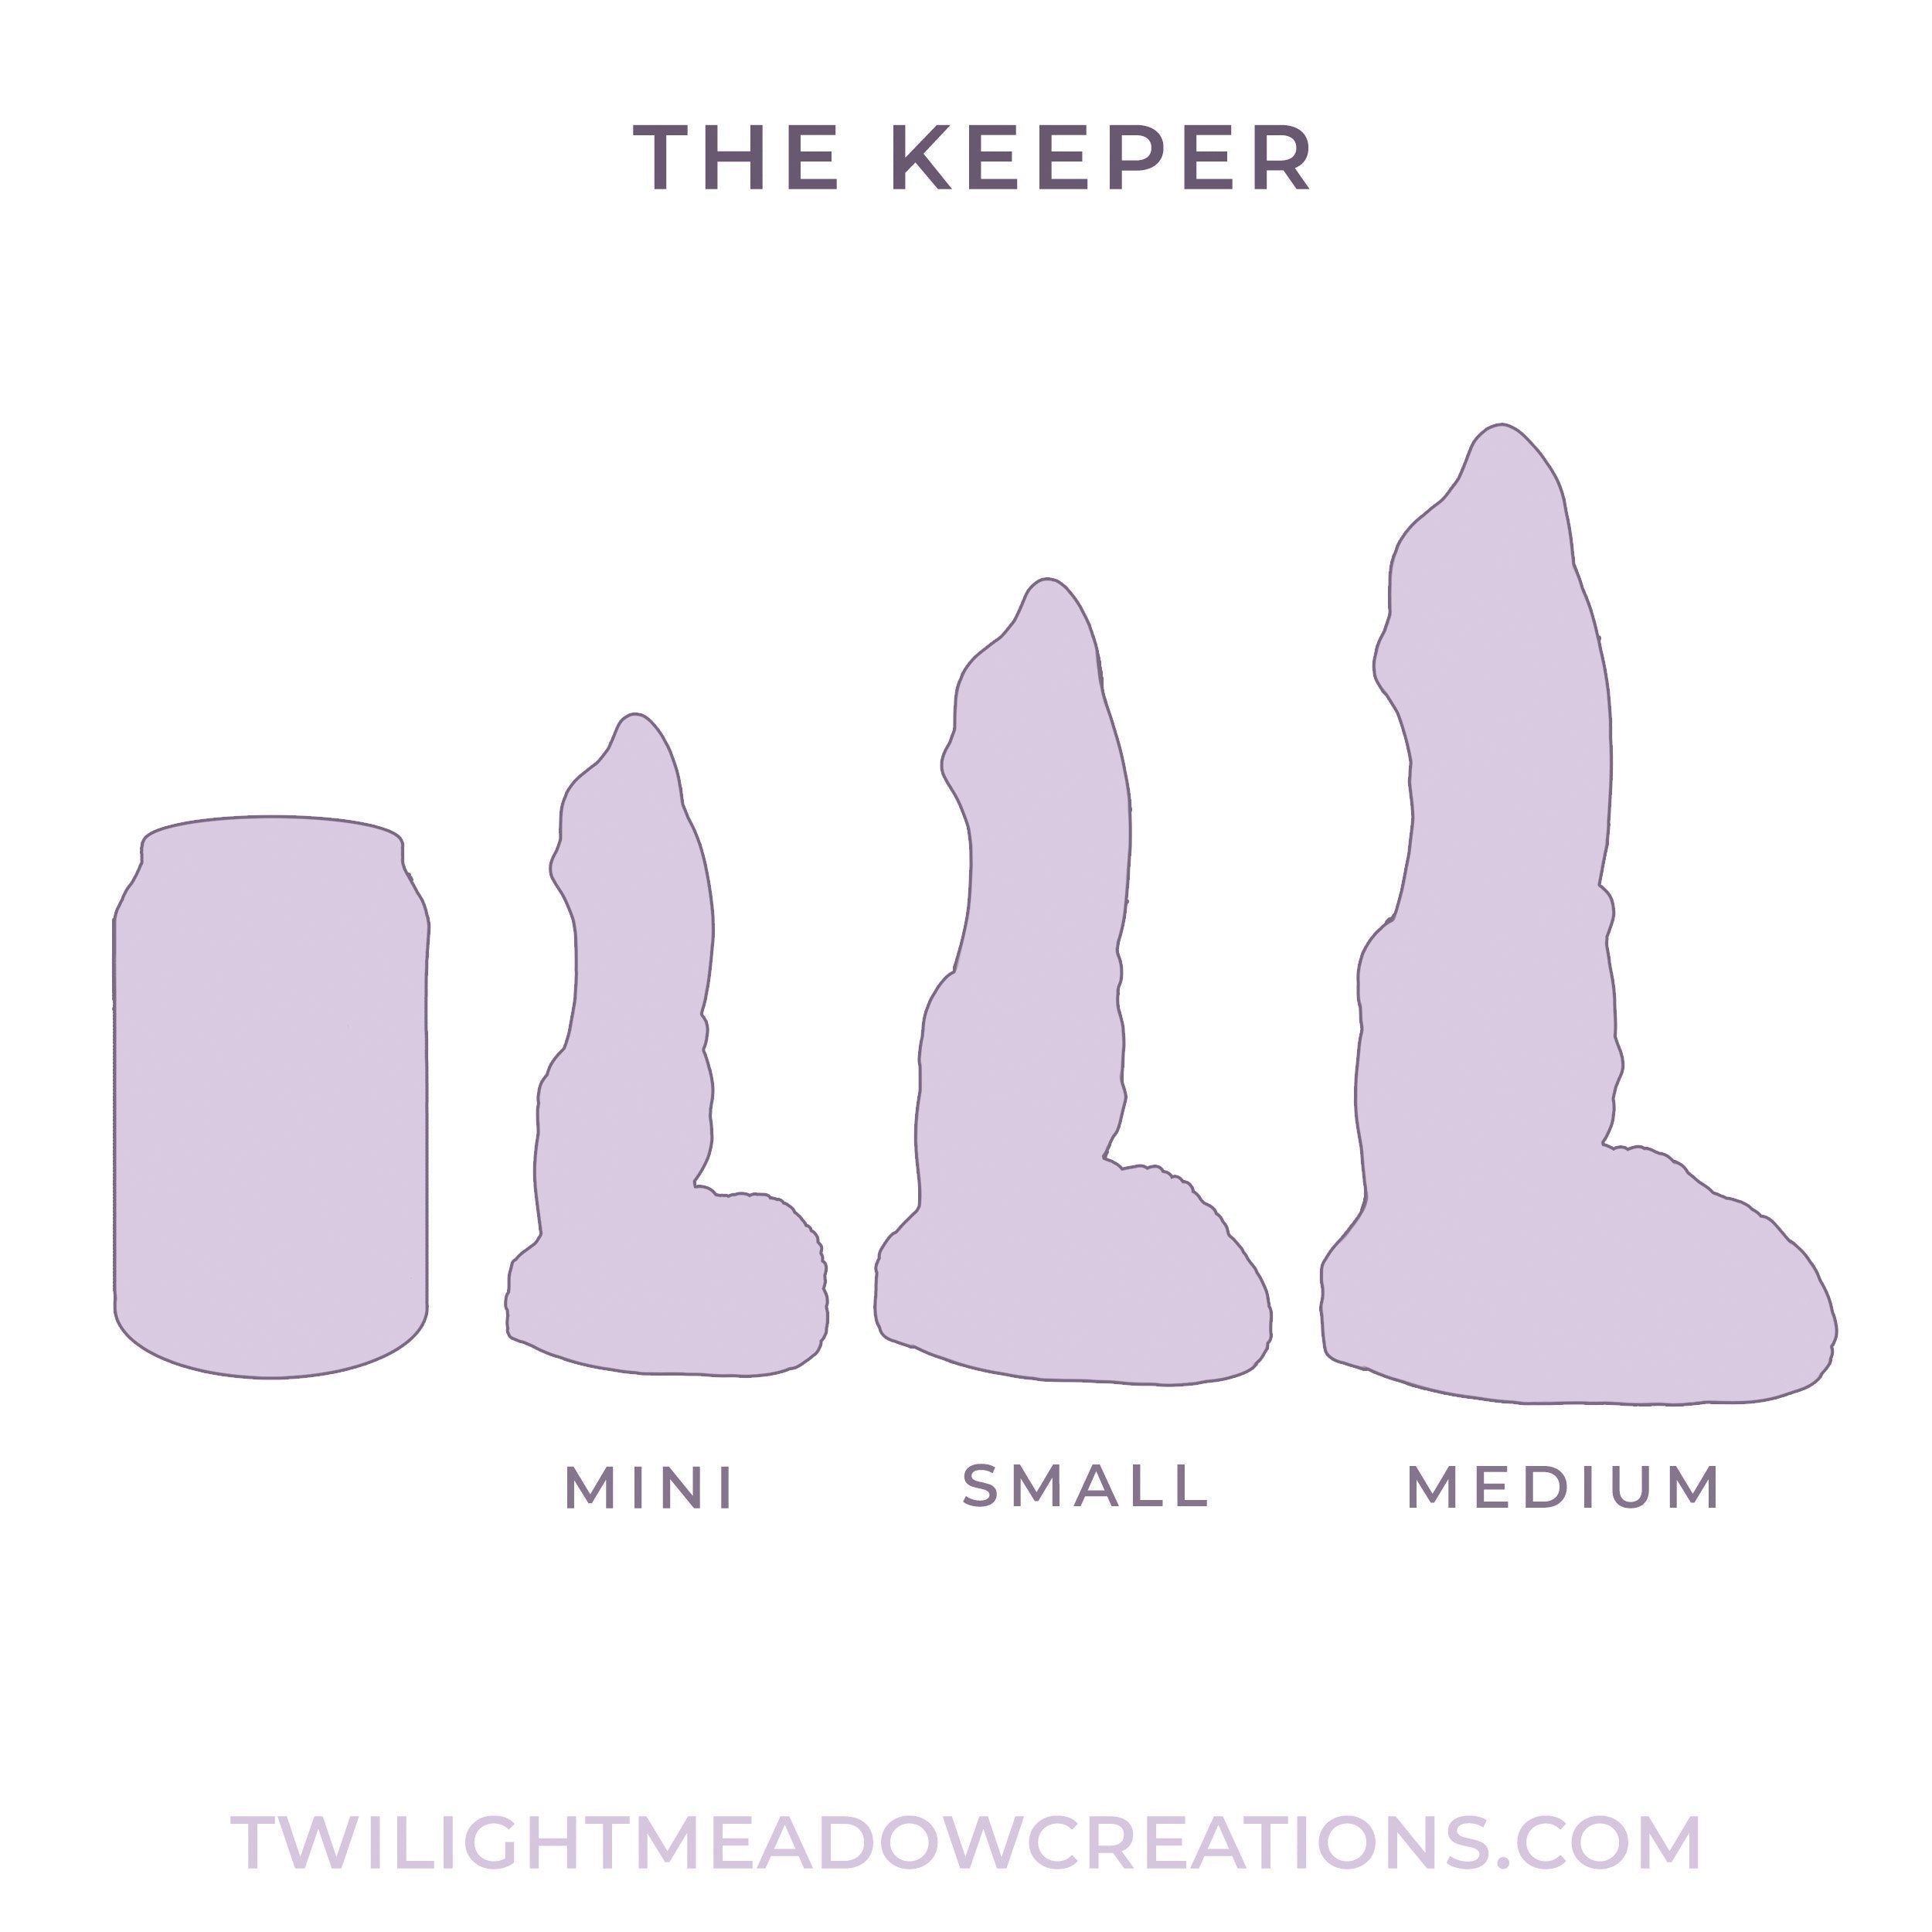 Mini Keeper (Firmness: Soft)